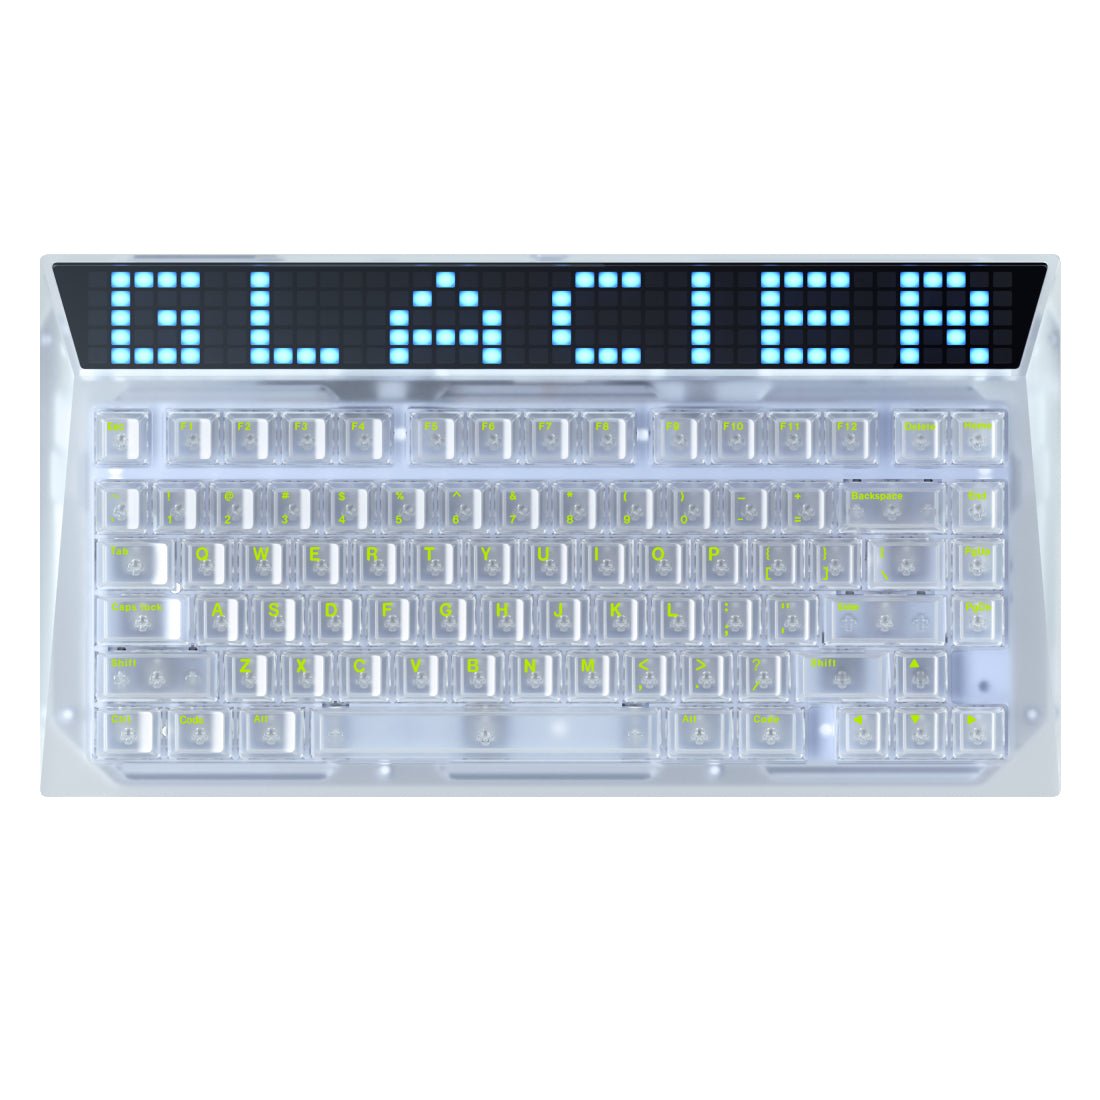 AngryMiao Glacier Keycap Set - مفاتيح - Store 974 | ستور ٩٧٤